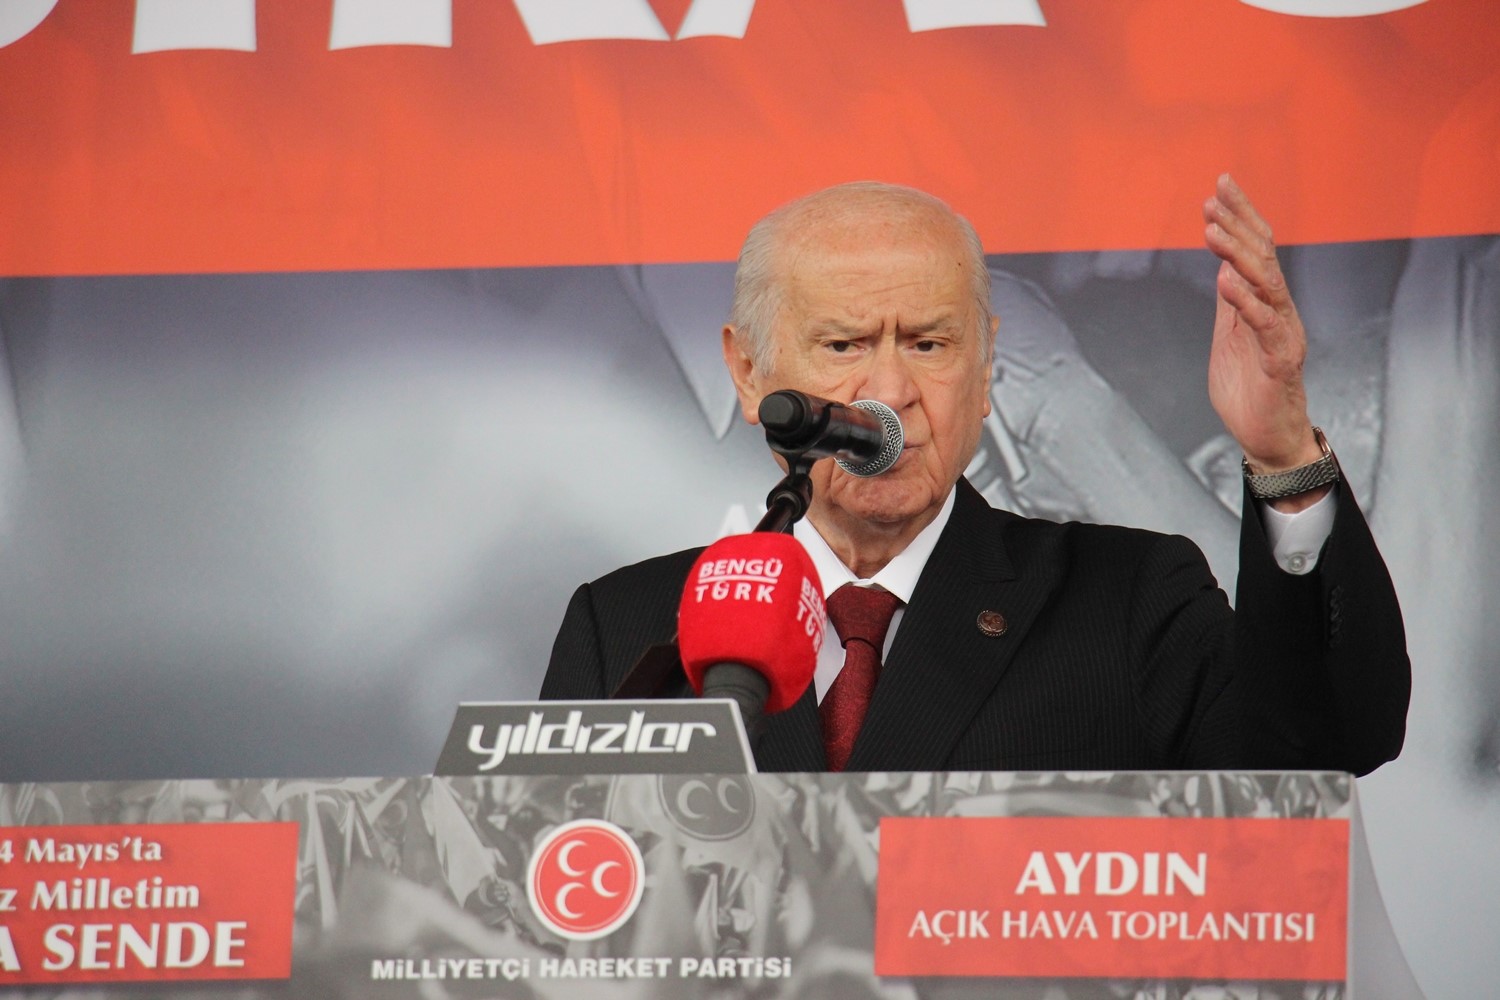 MHP Lideri Bahçeli: Kılıçdaroğlu’na verilen oylar Kandil’e gidecek!